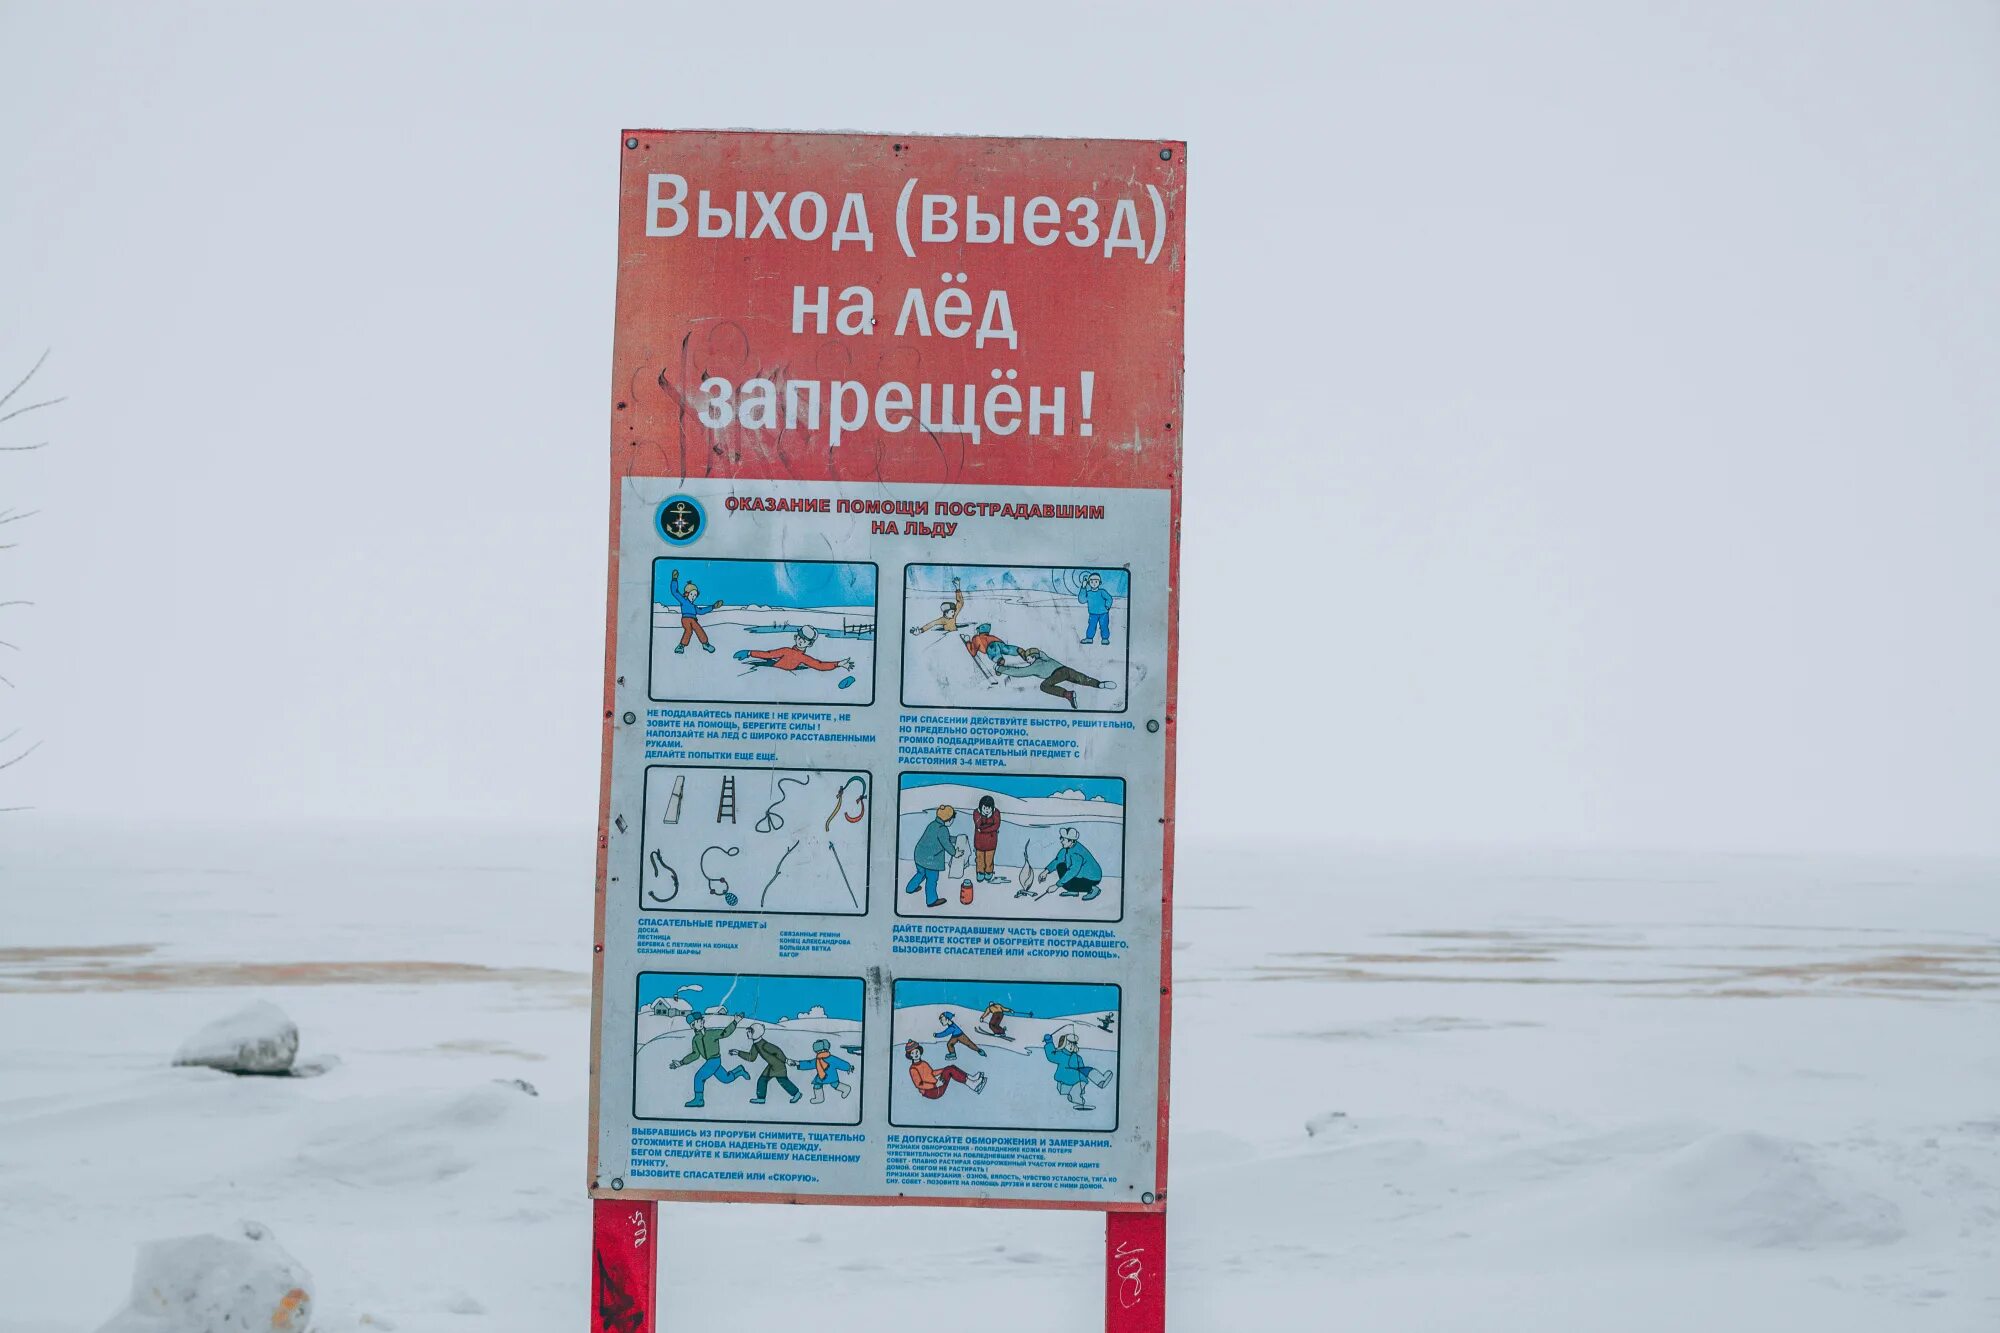 Переправа по льду. Правила поведения на льду и выезд на переправу. Запрет выезда на лед. Требования безопасности на переправах на льду. Выезд на лед запрещен картинки.